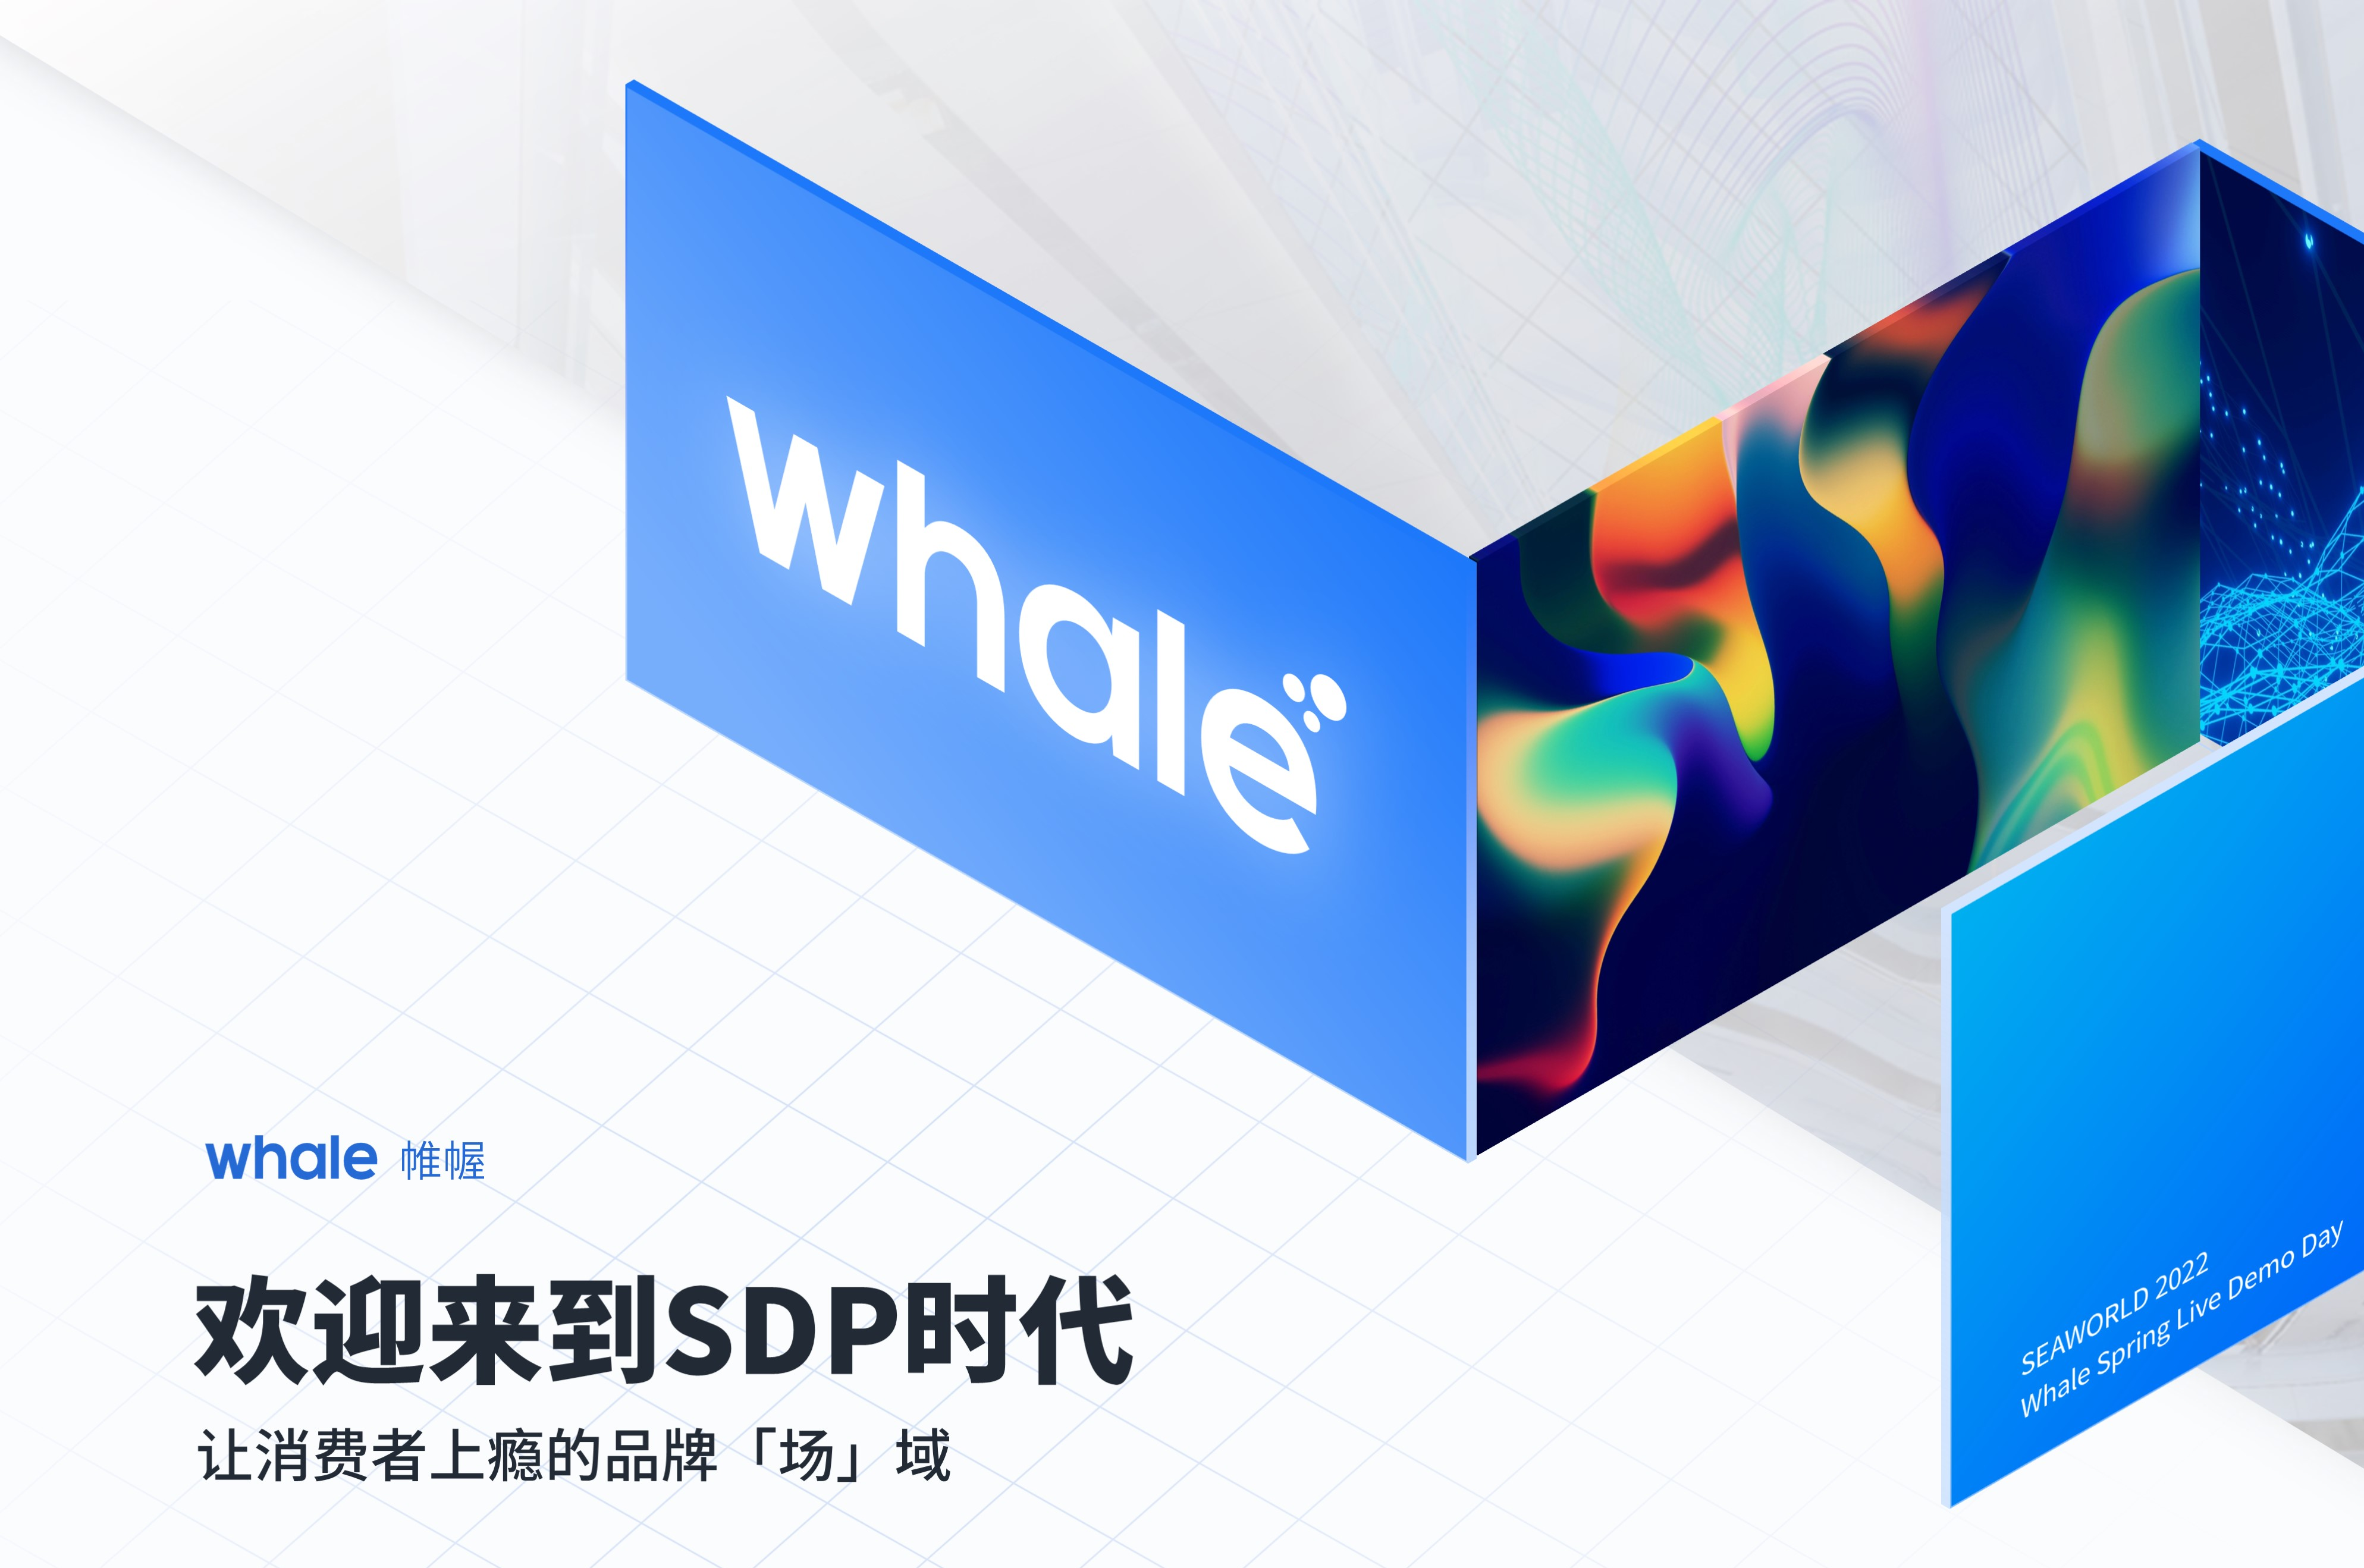 Whale 帷幄发布SDP空间数据平台，开辟场域数据新赛道